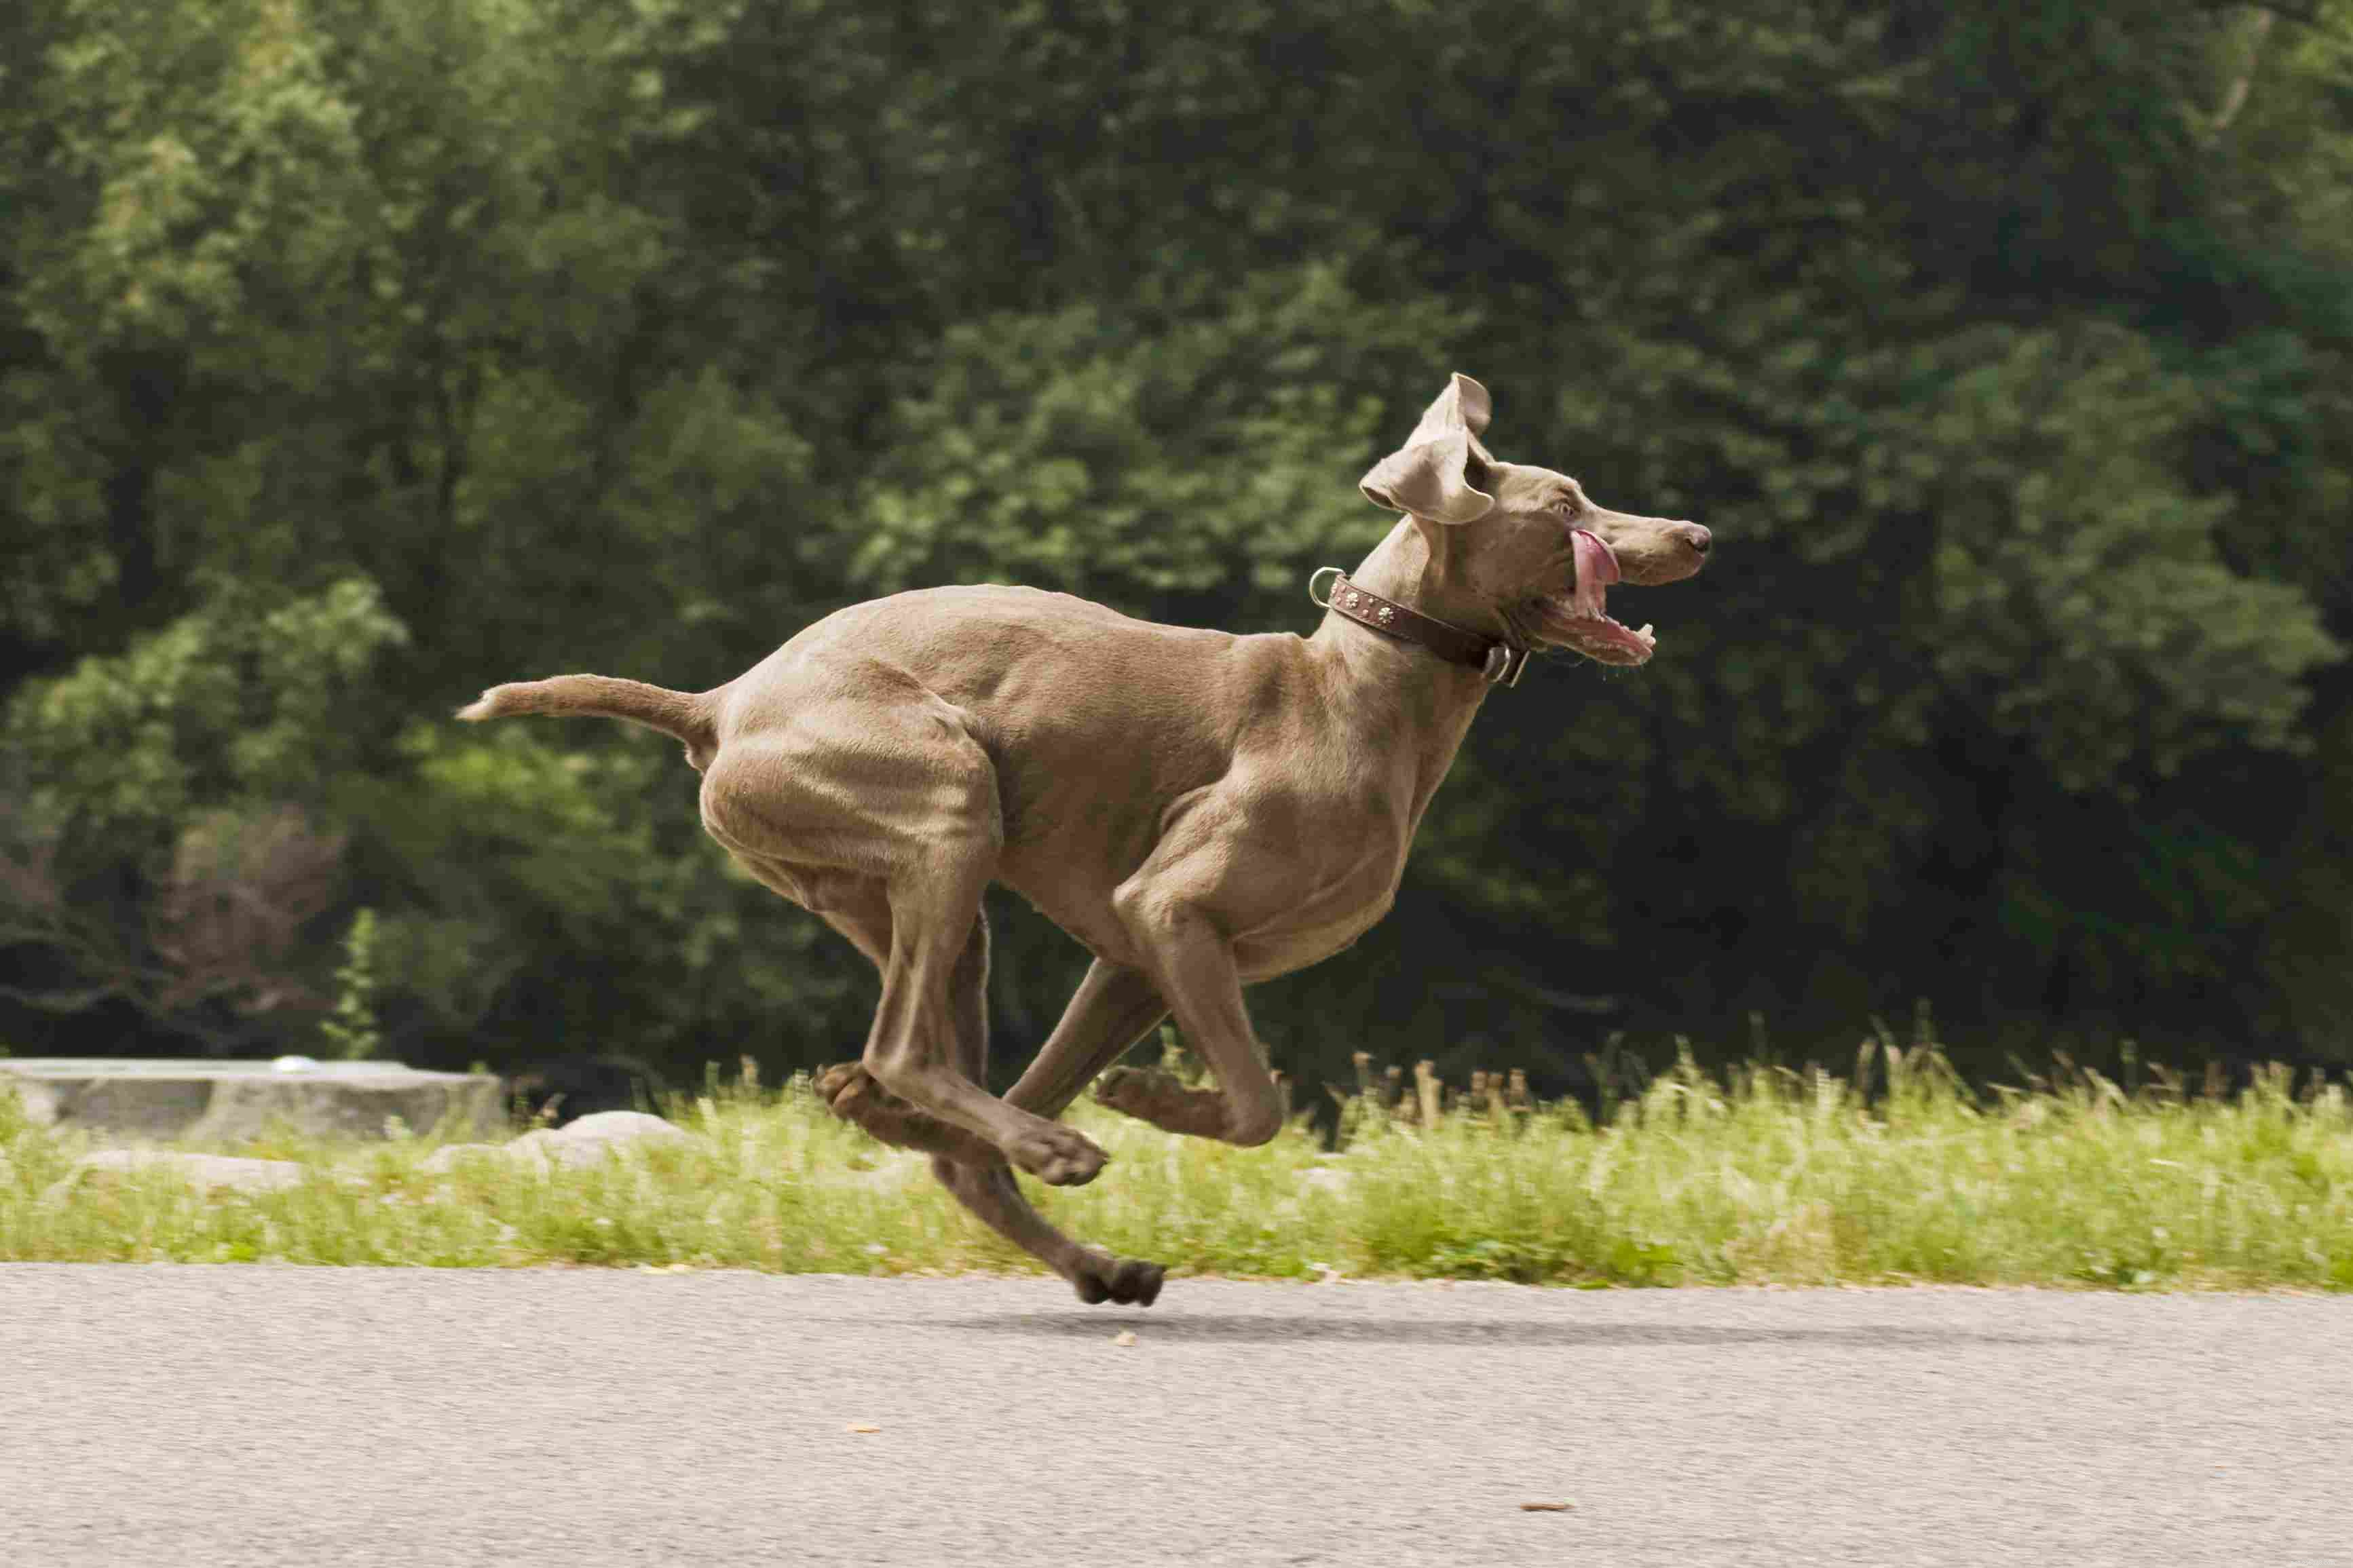 10 melhores raças de cães energéticos para pessoas ativas